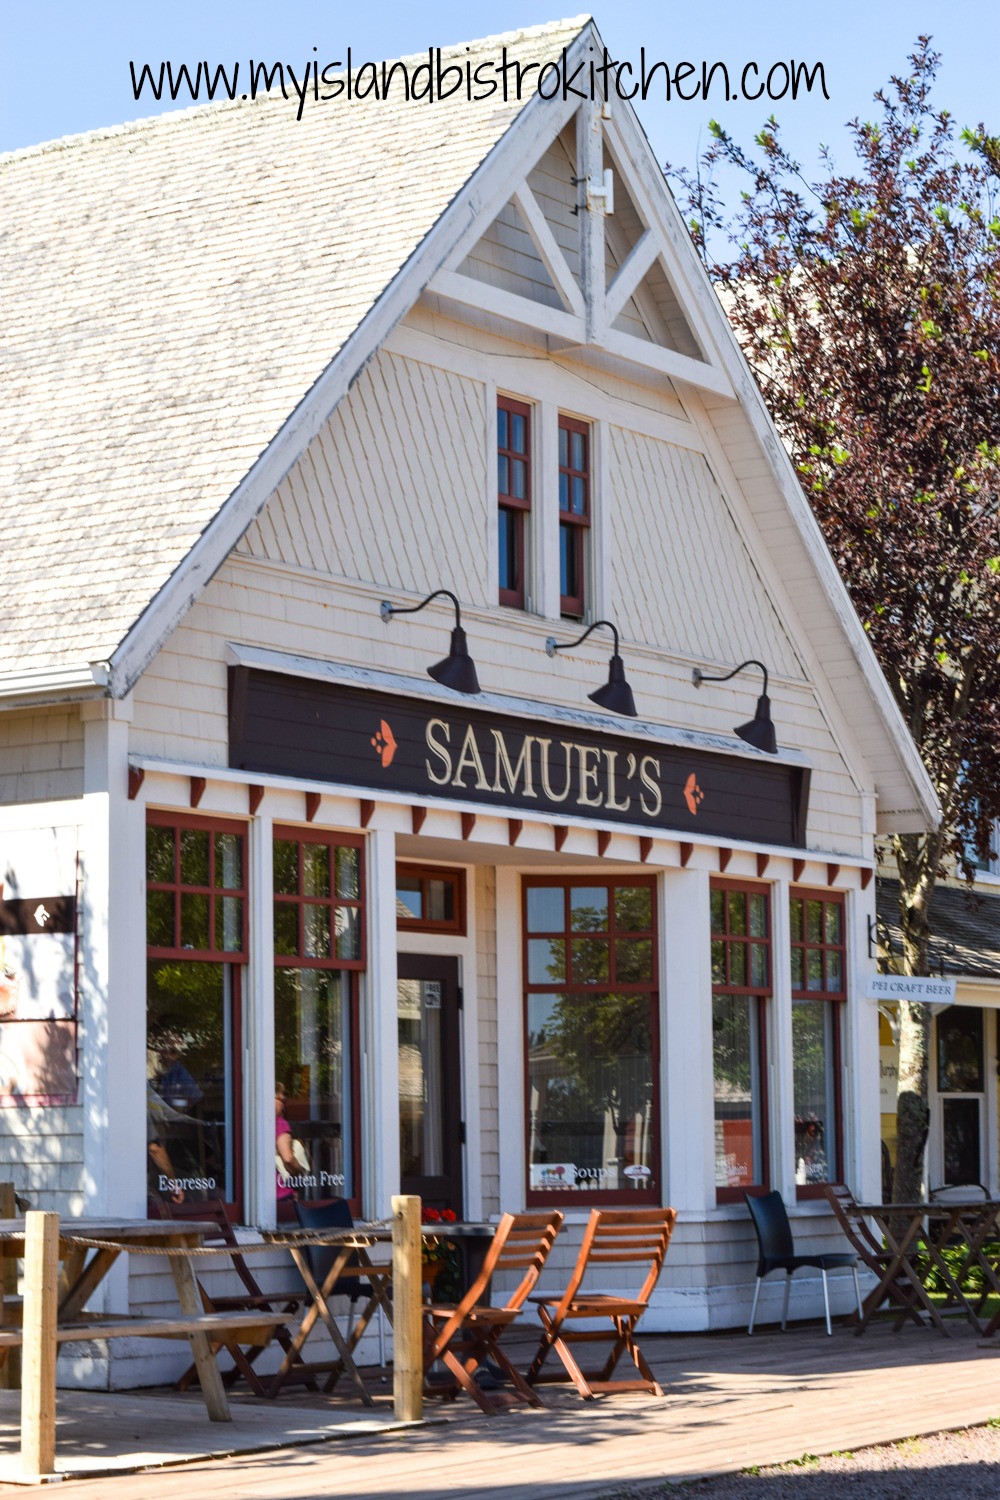 Samuel's in Cavendish, PEI